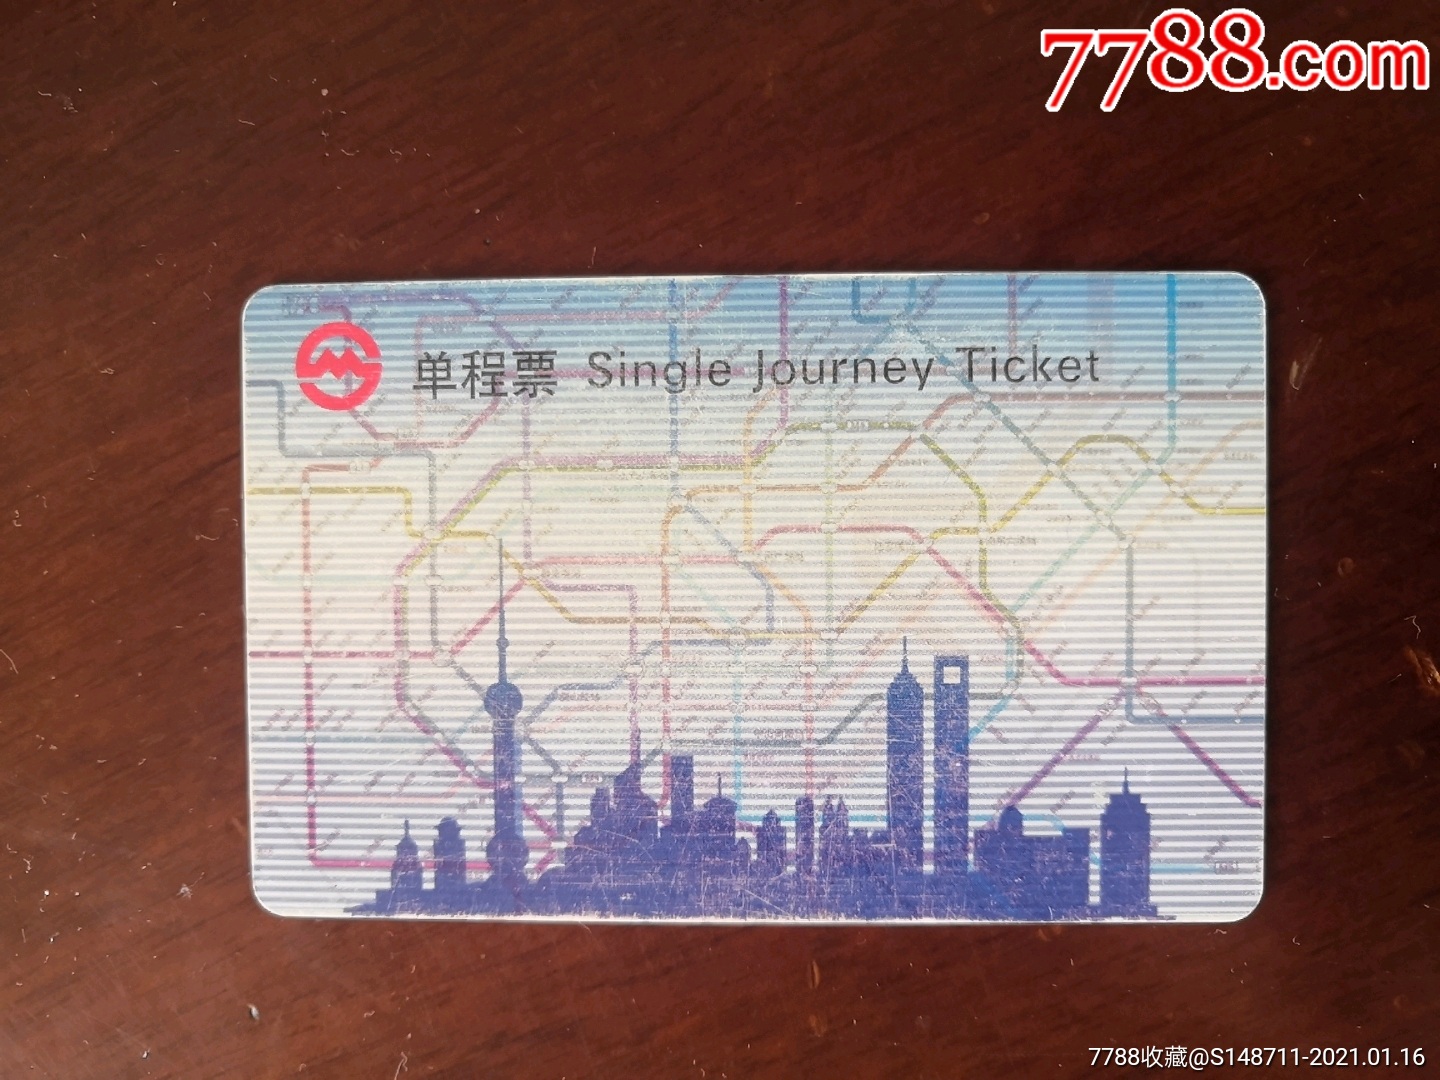 上海地铁单程票pd090601